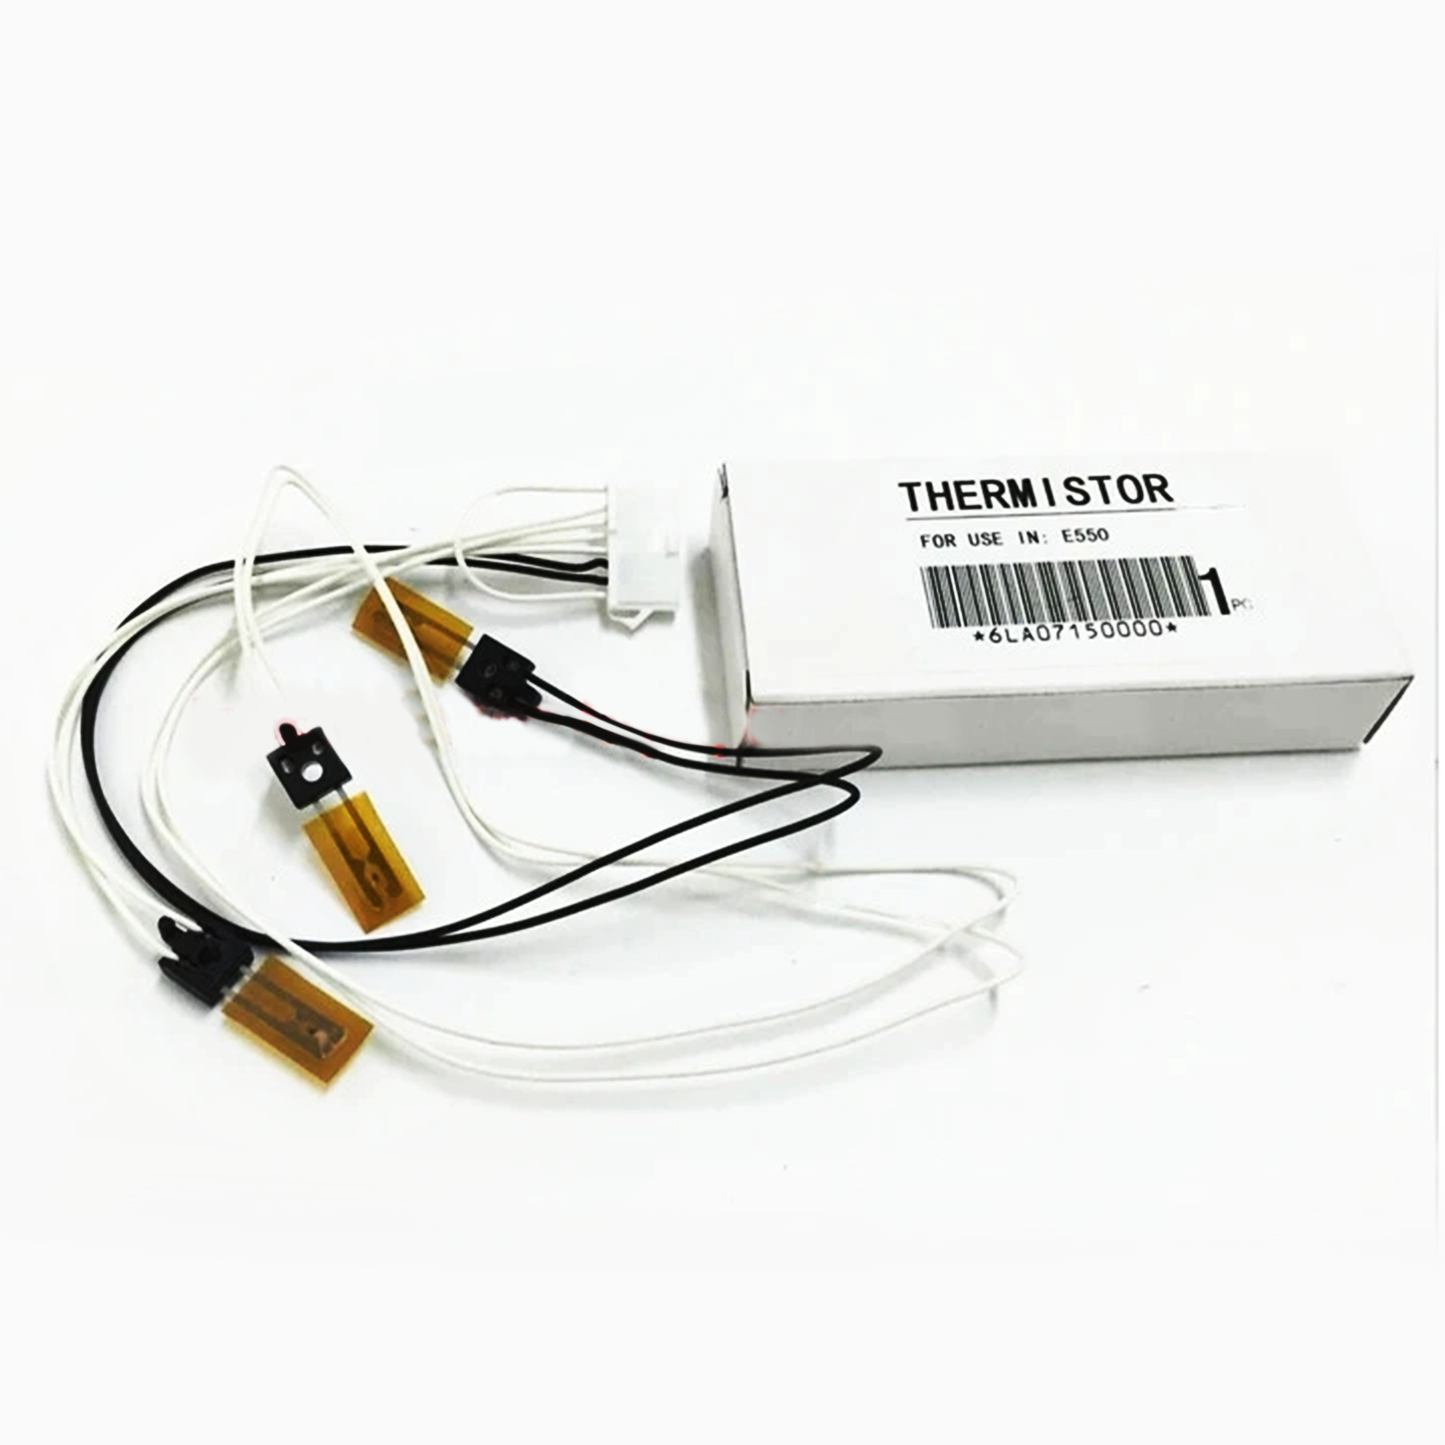 2Pcs Fuser Thermistor For Toshiba E-Studio 550 650 810 6LA07150000